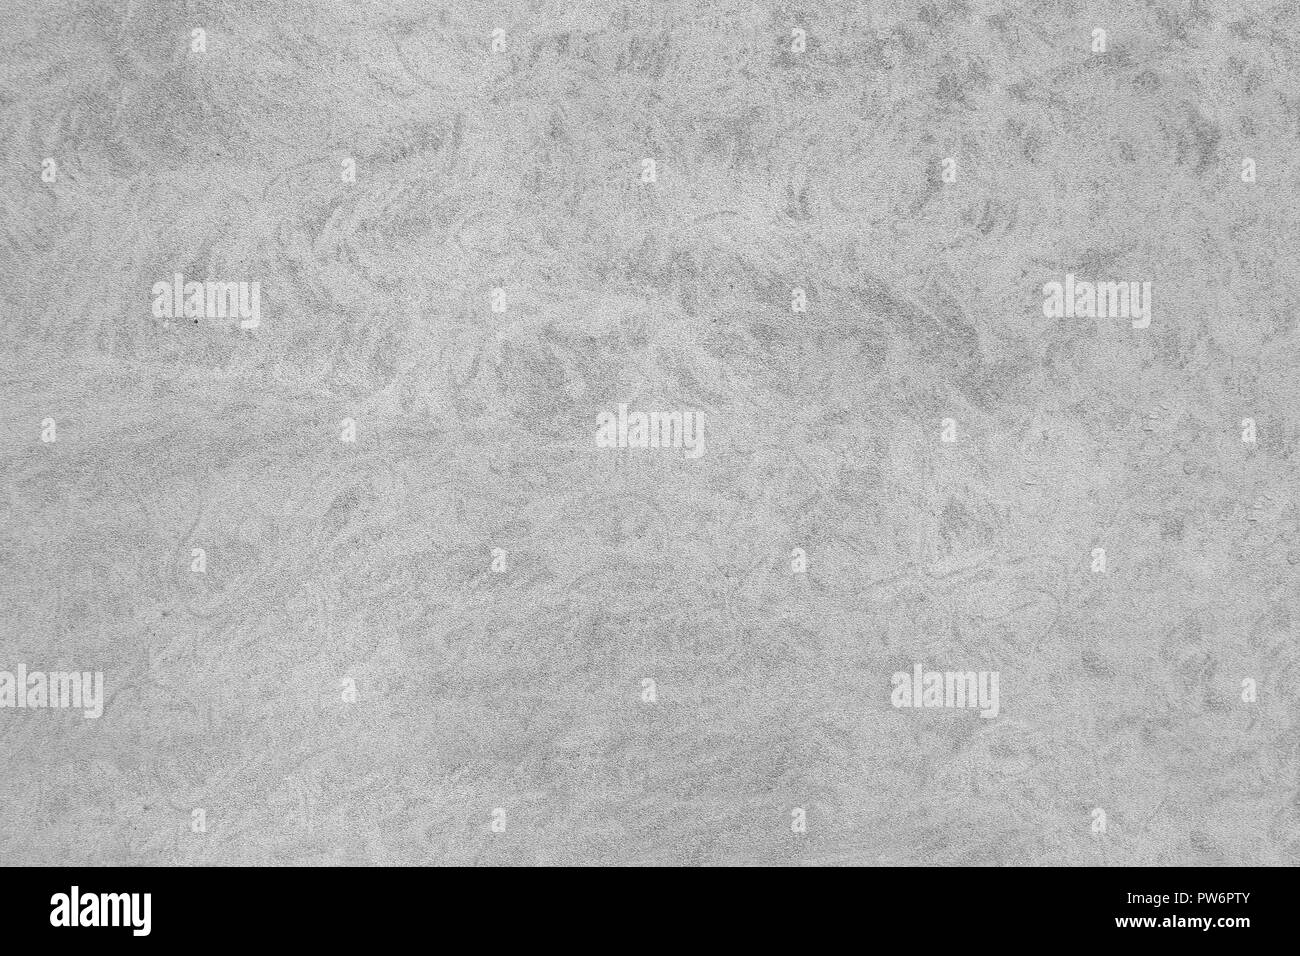 Bianco grigio cemento muratura superficie testurizzata parete sullo sfondo del pavimento Foto Stock